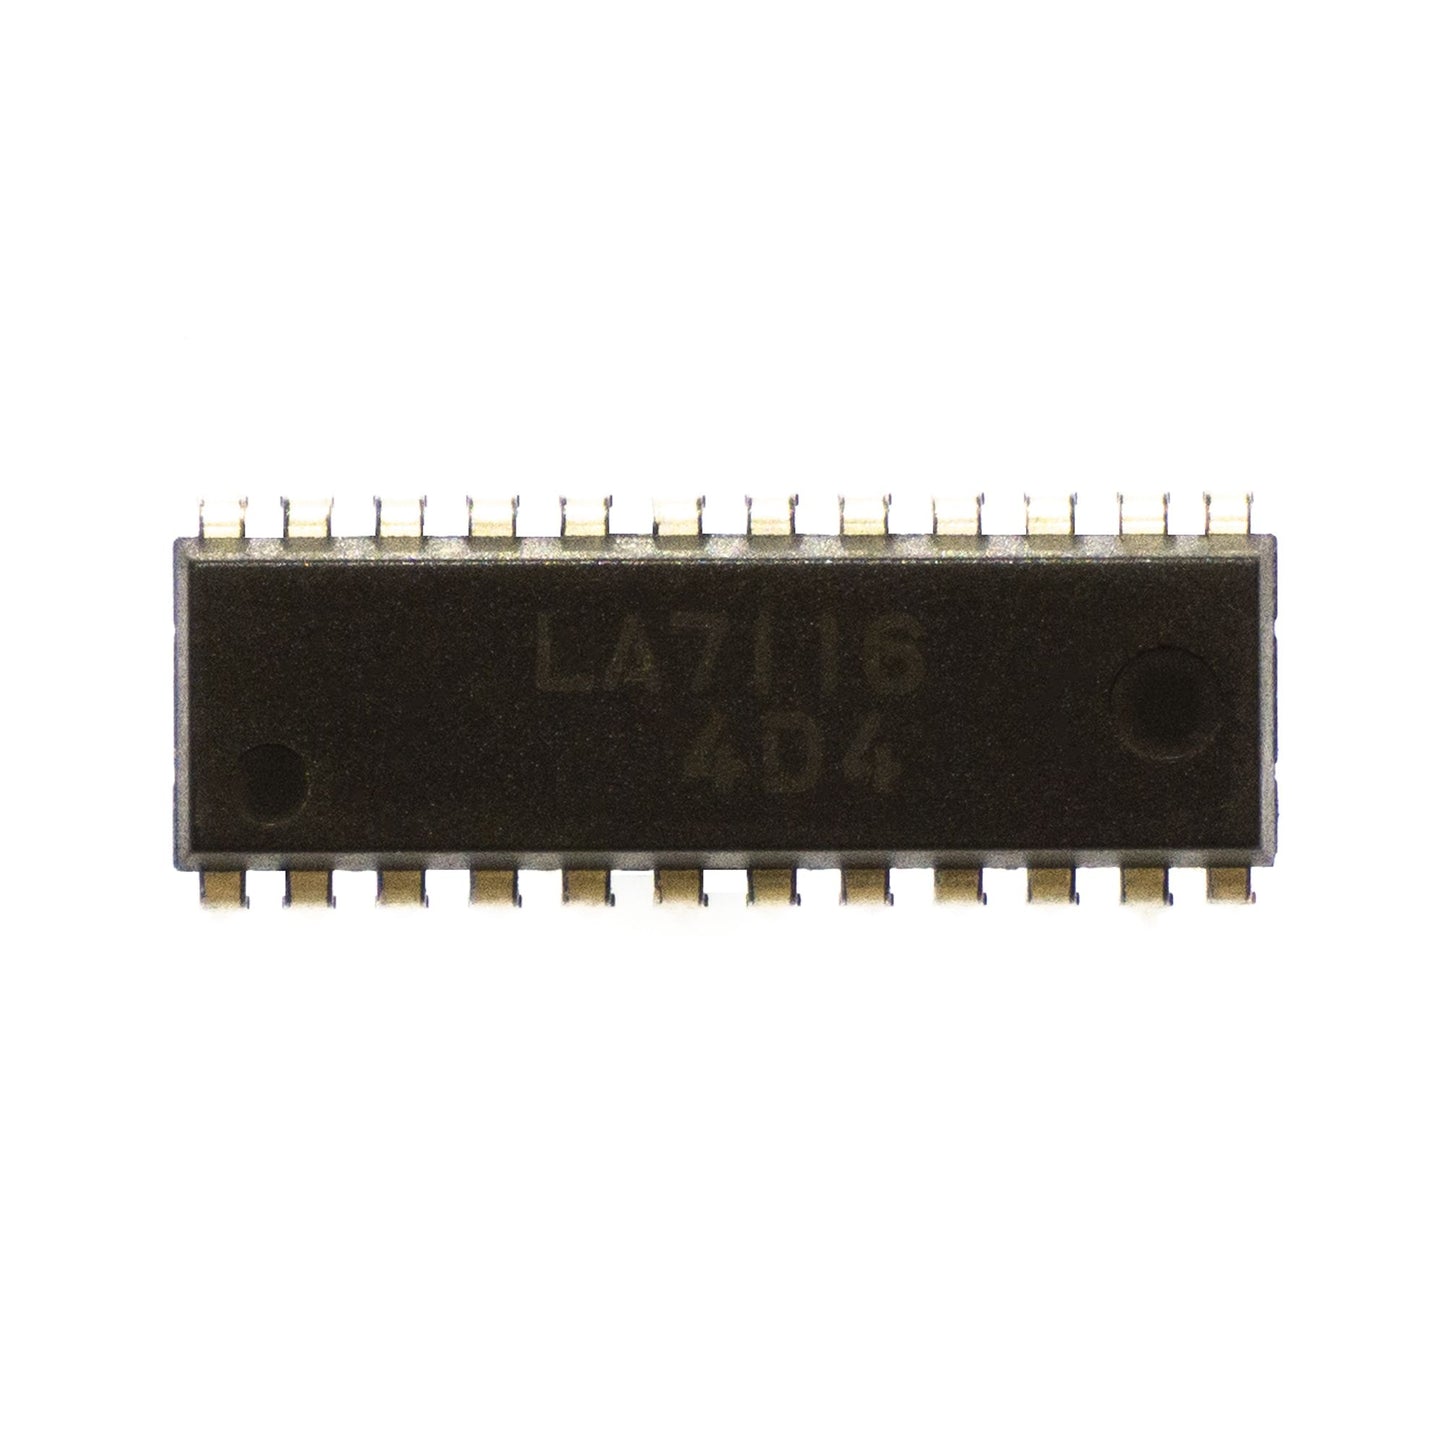 LA7116 componente elettronico, circuito integrato, transistor, 24 contatti